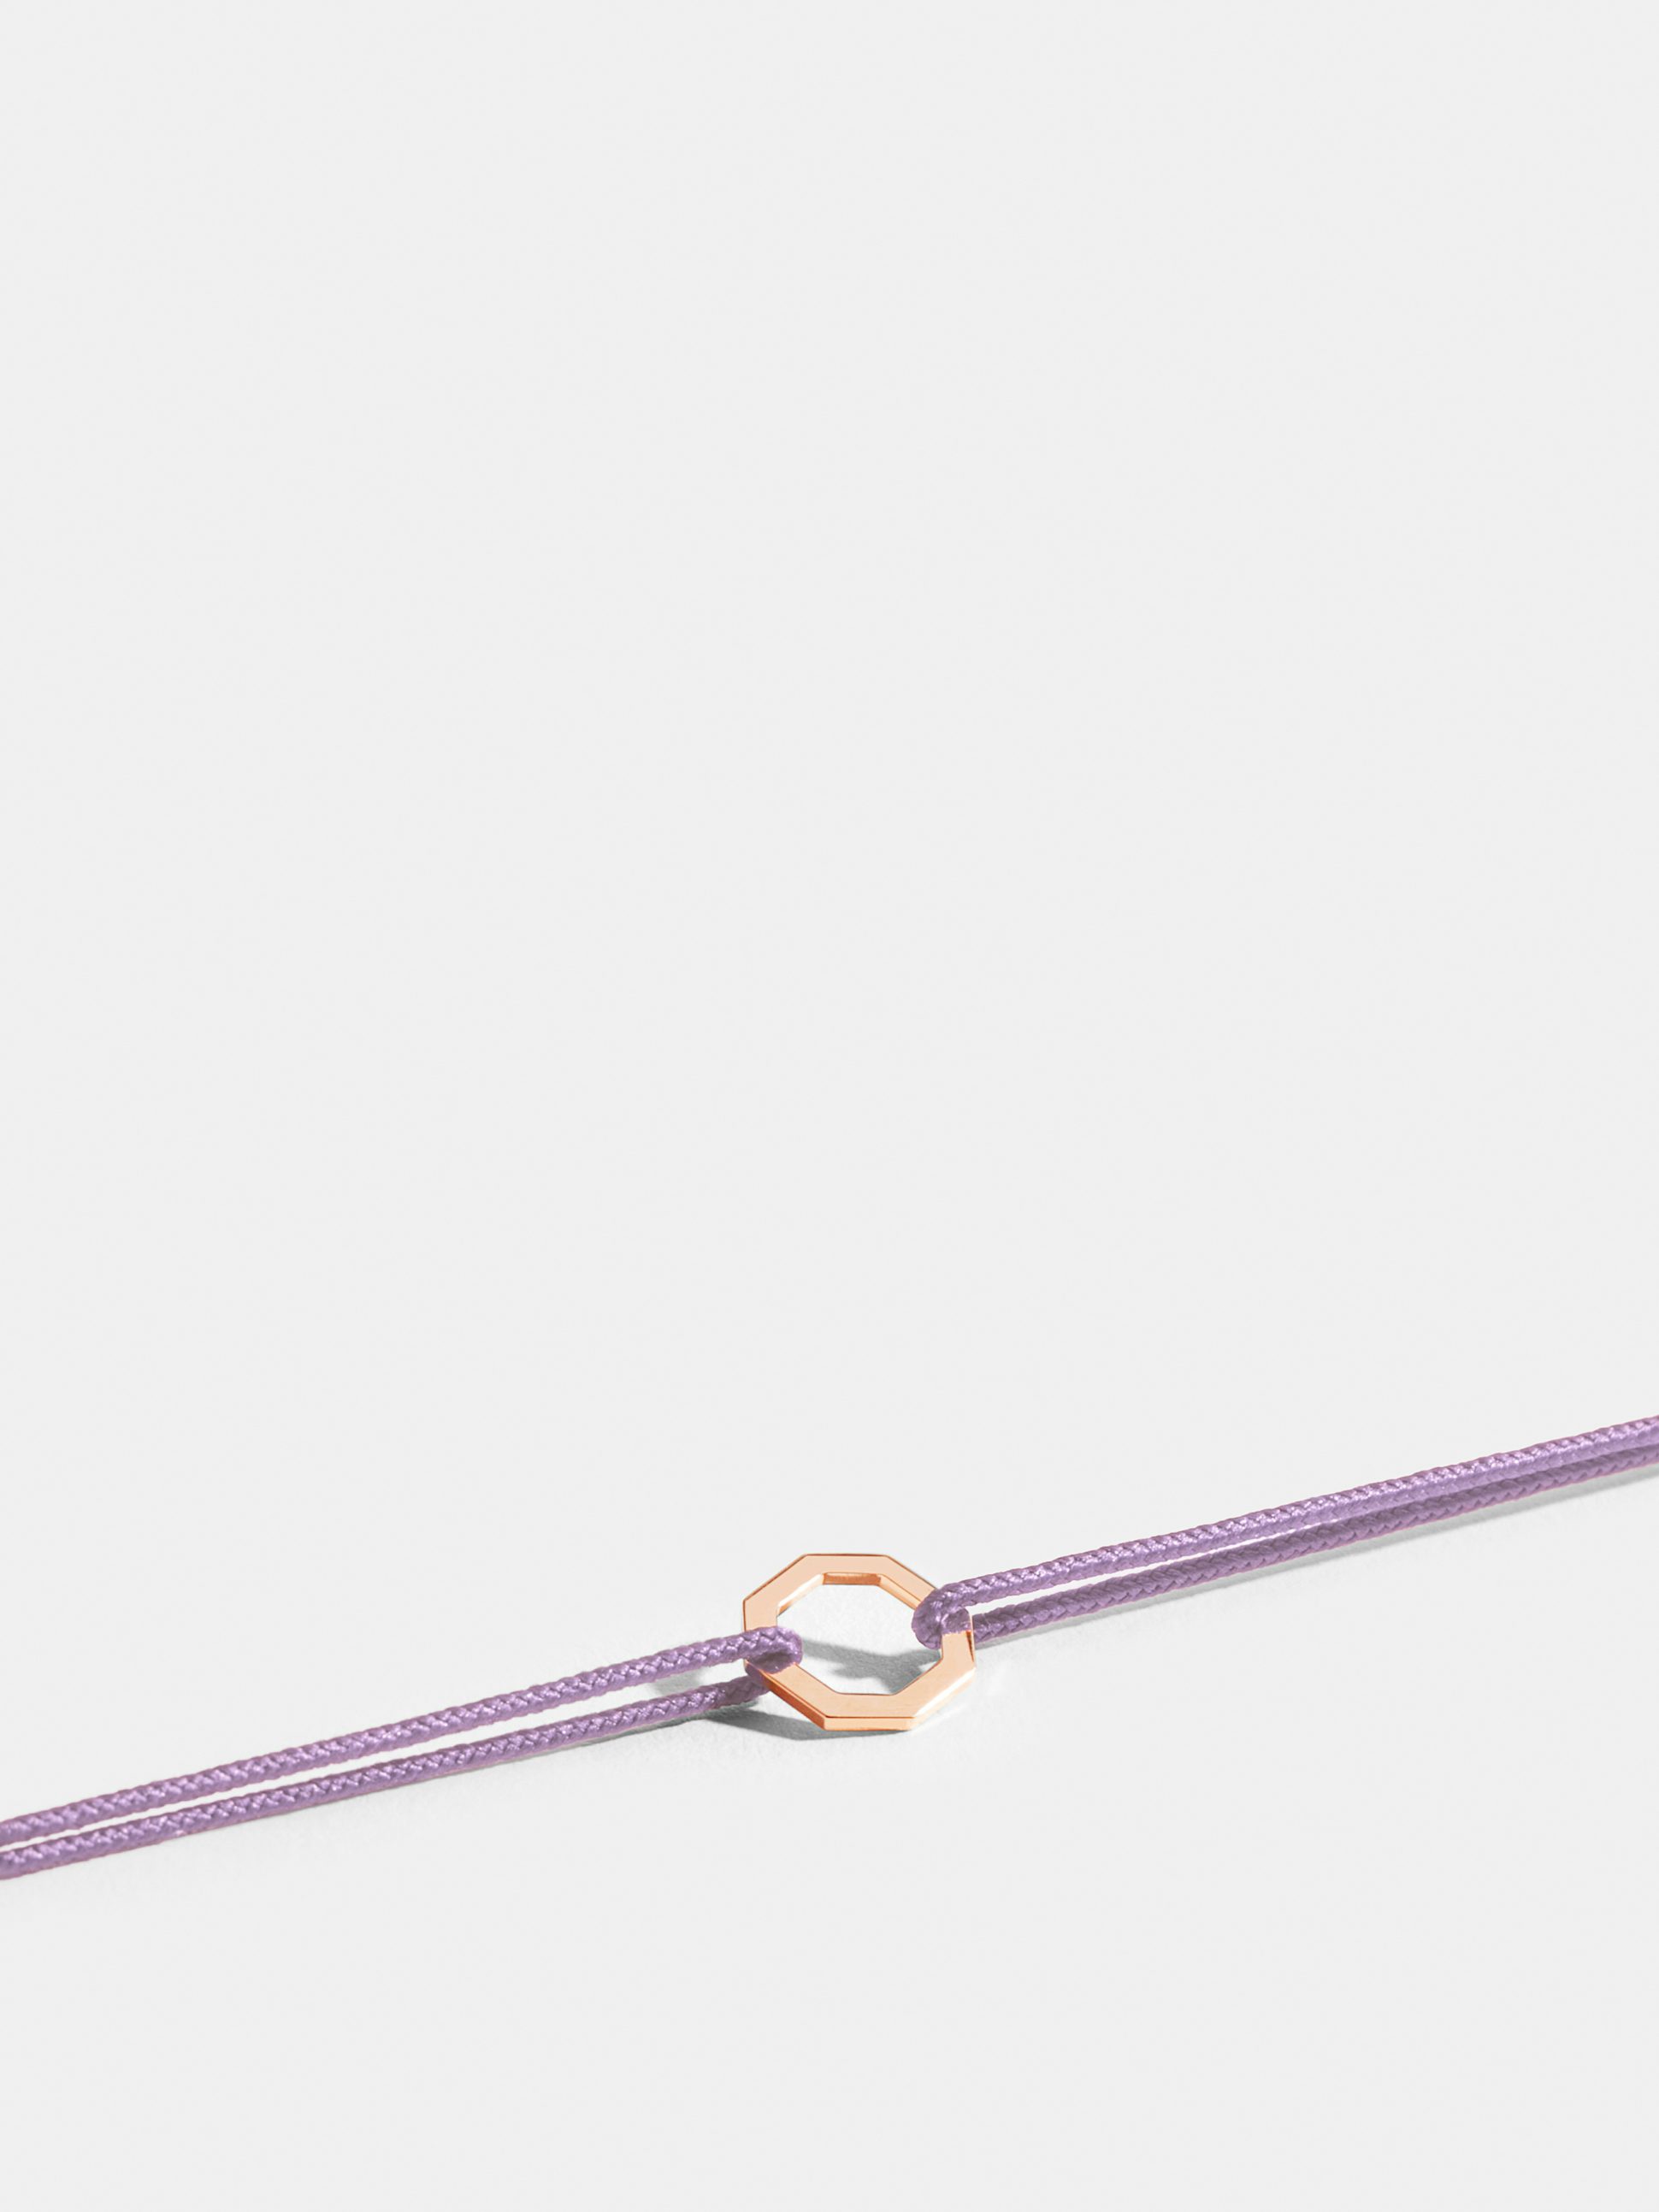 Motif Octogone en Or rose éthique 18 carats certifié Fairmined, sur cordon violet lilas.